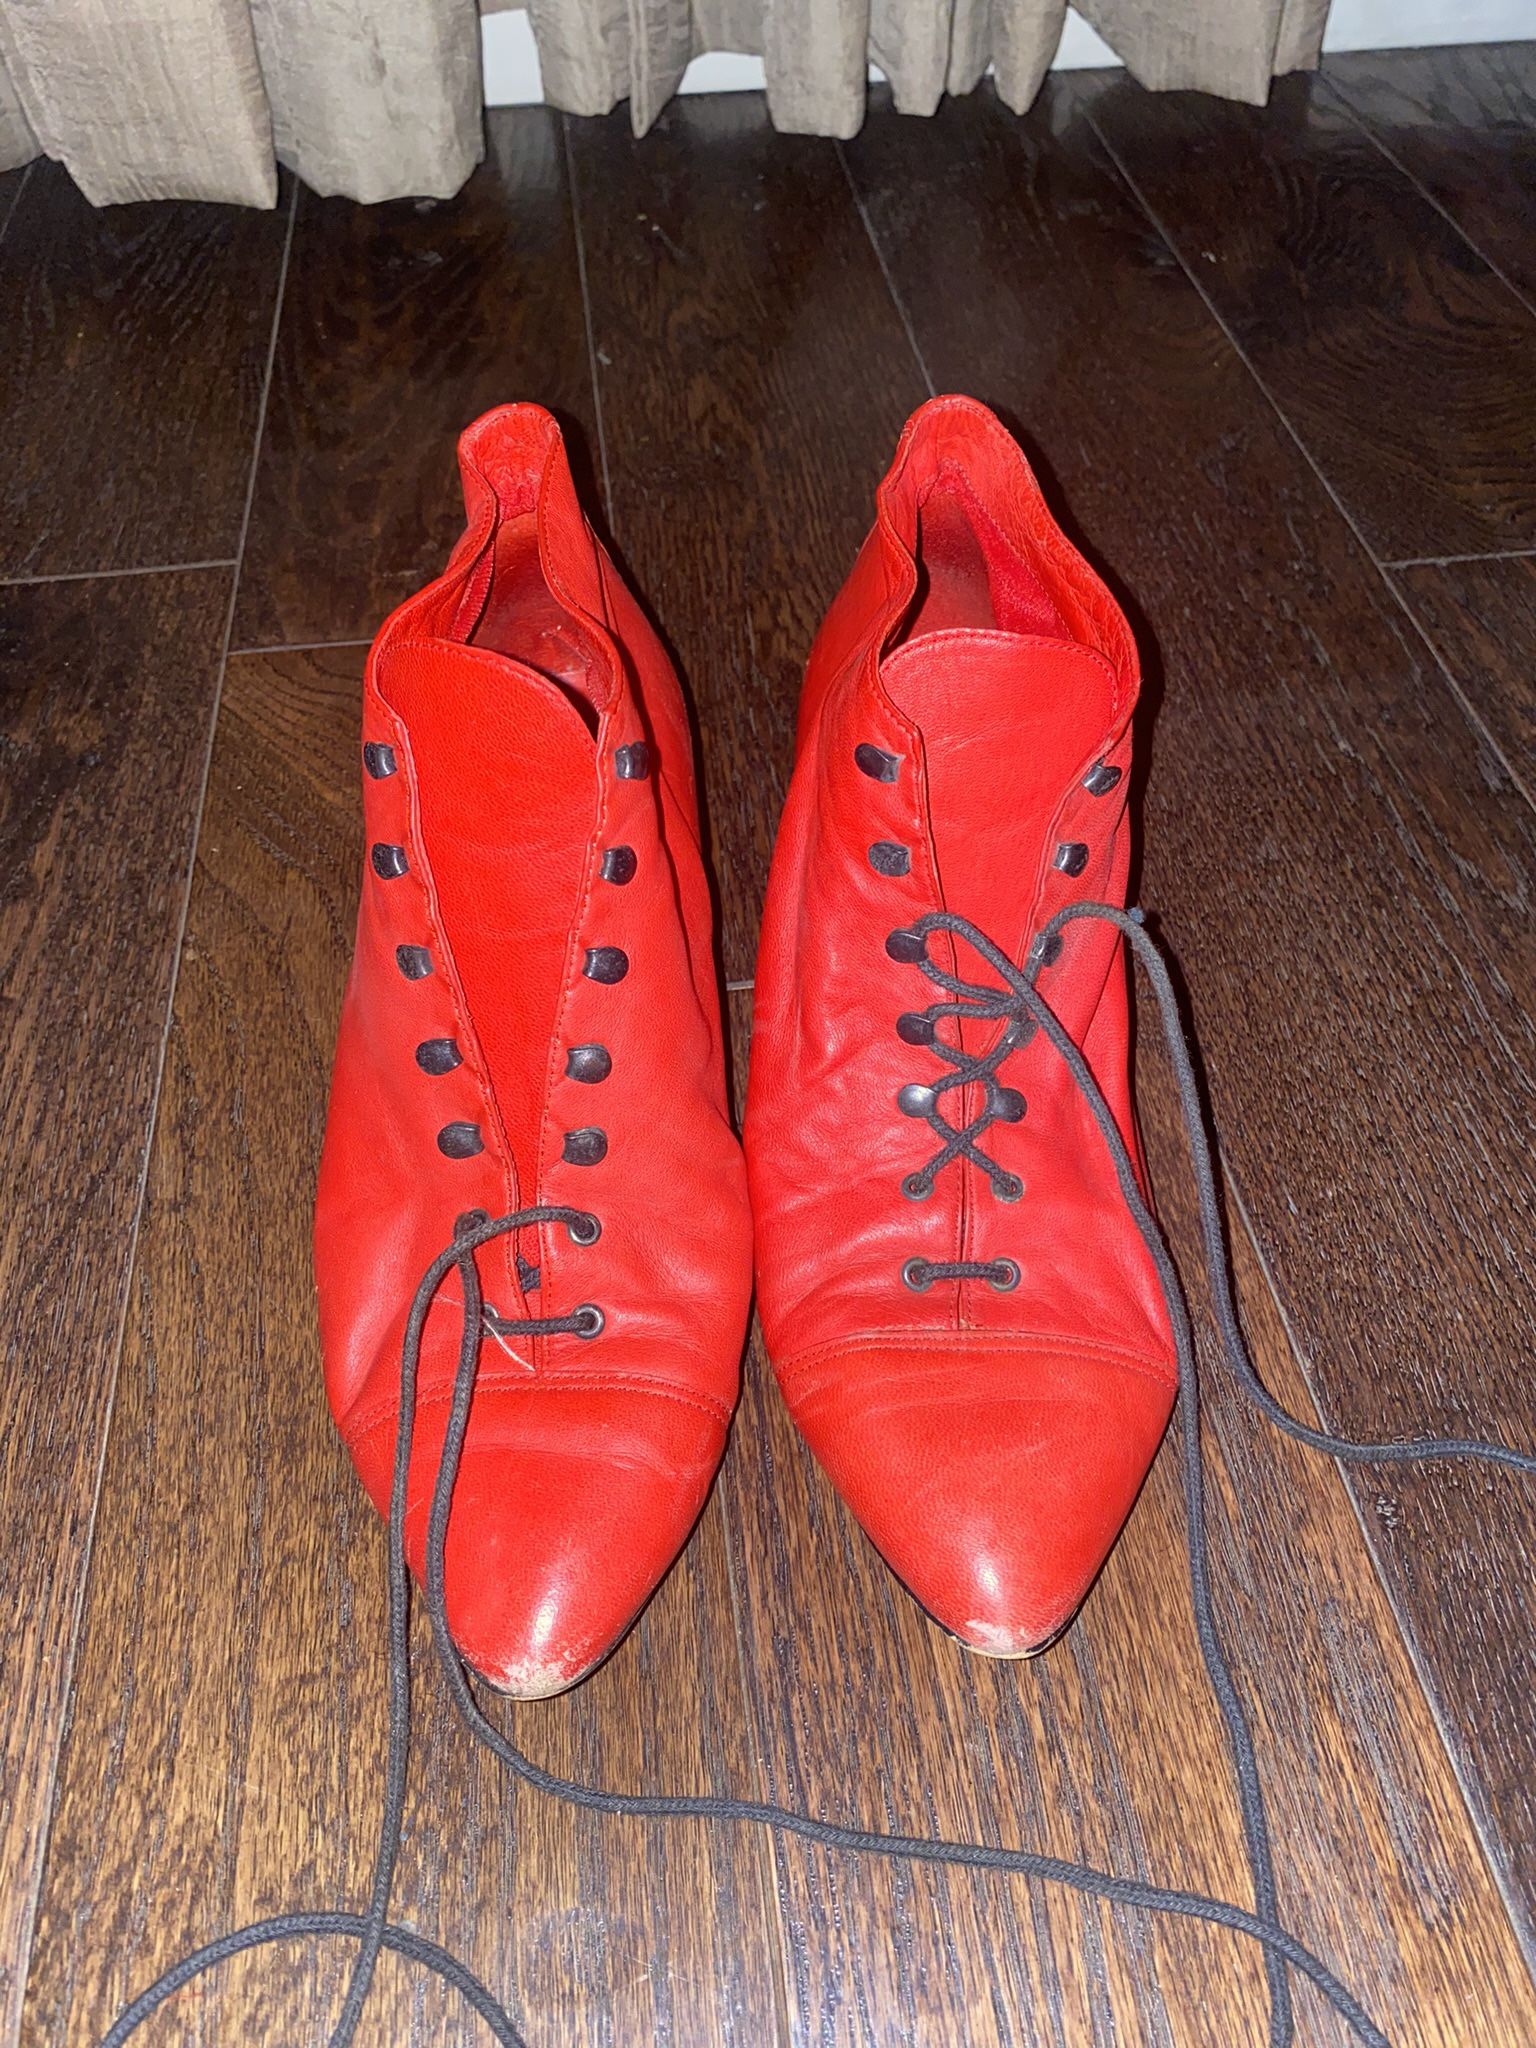 Vintage Red Heel